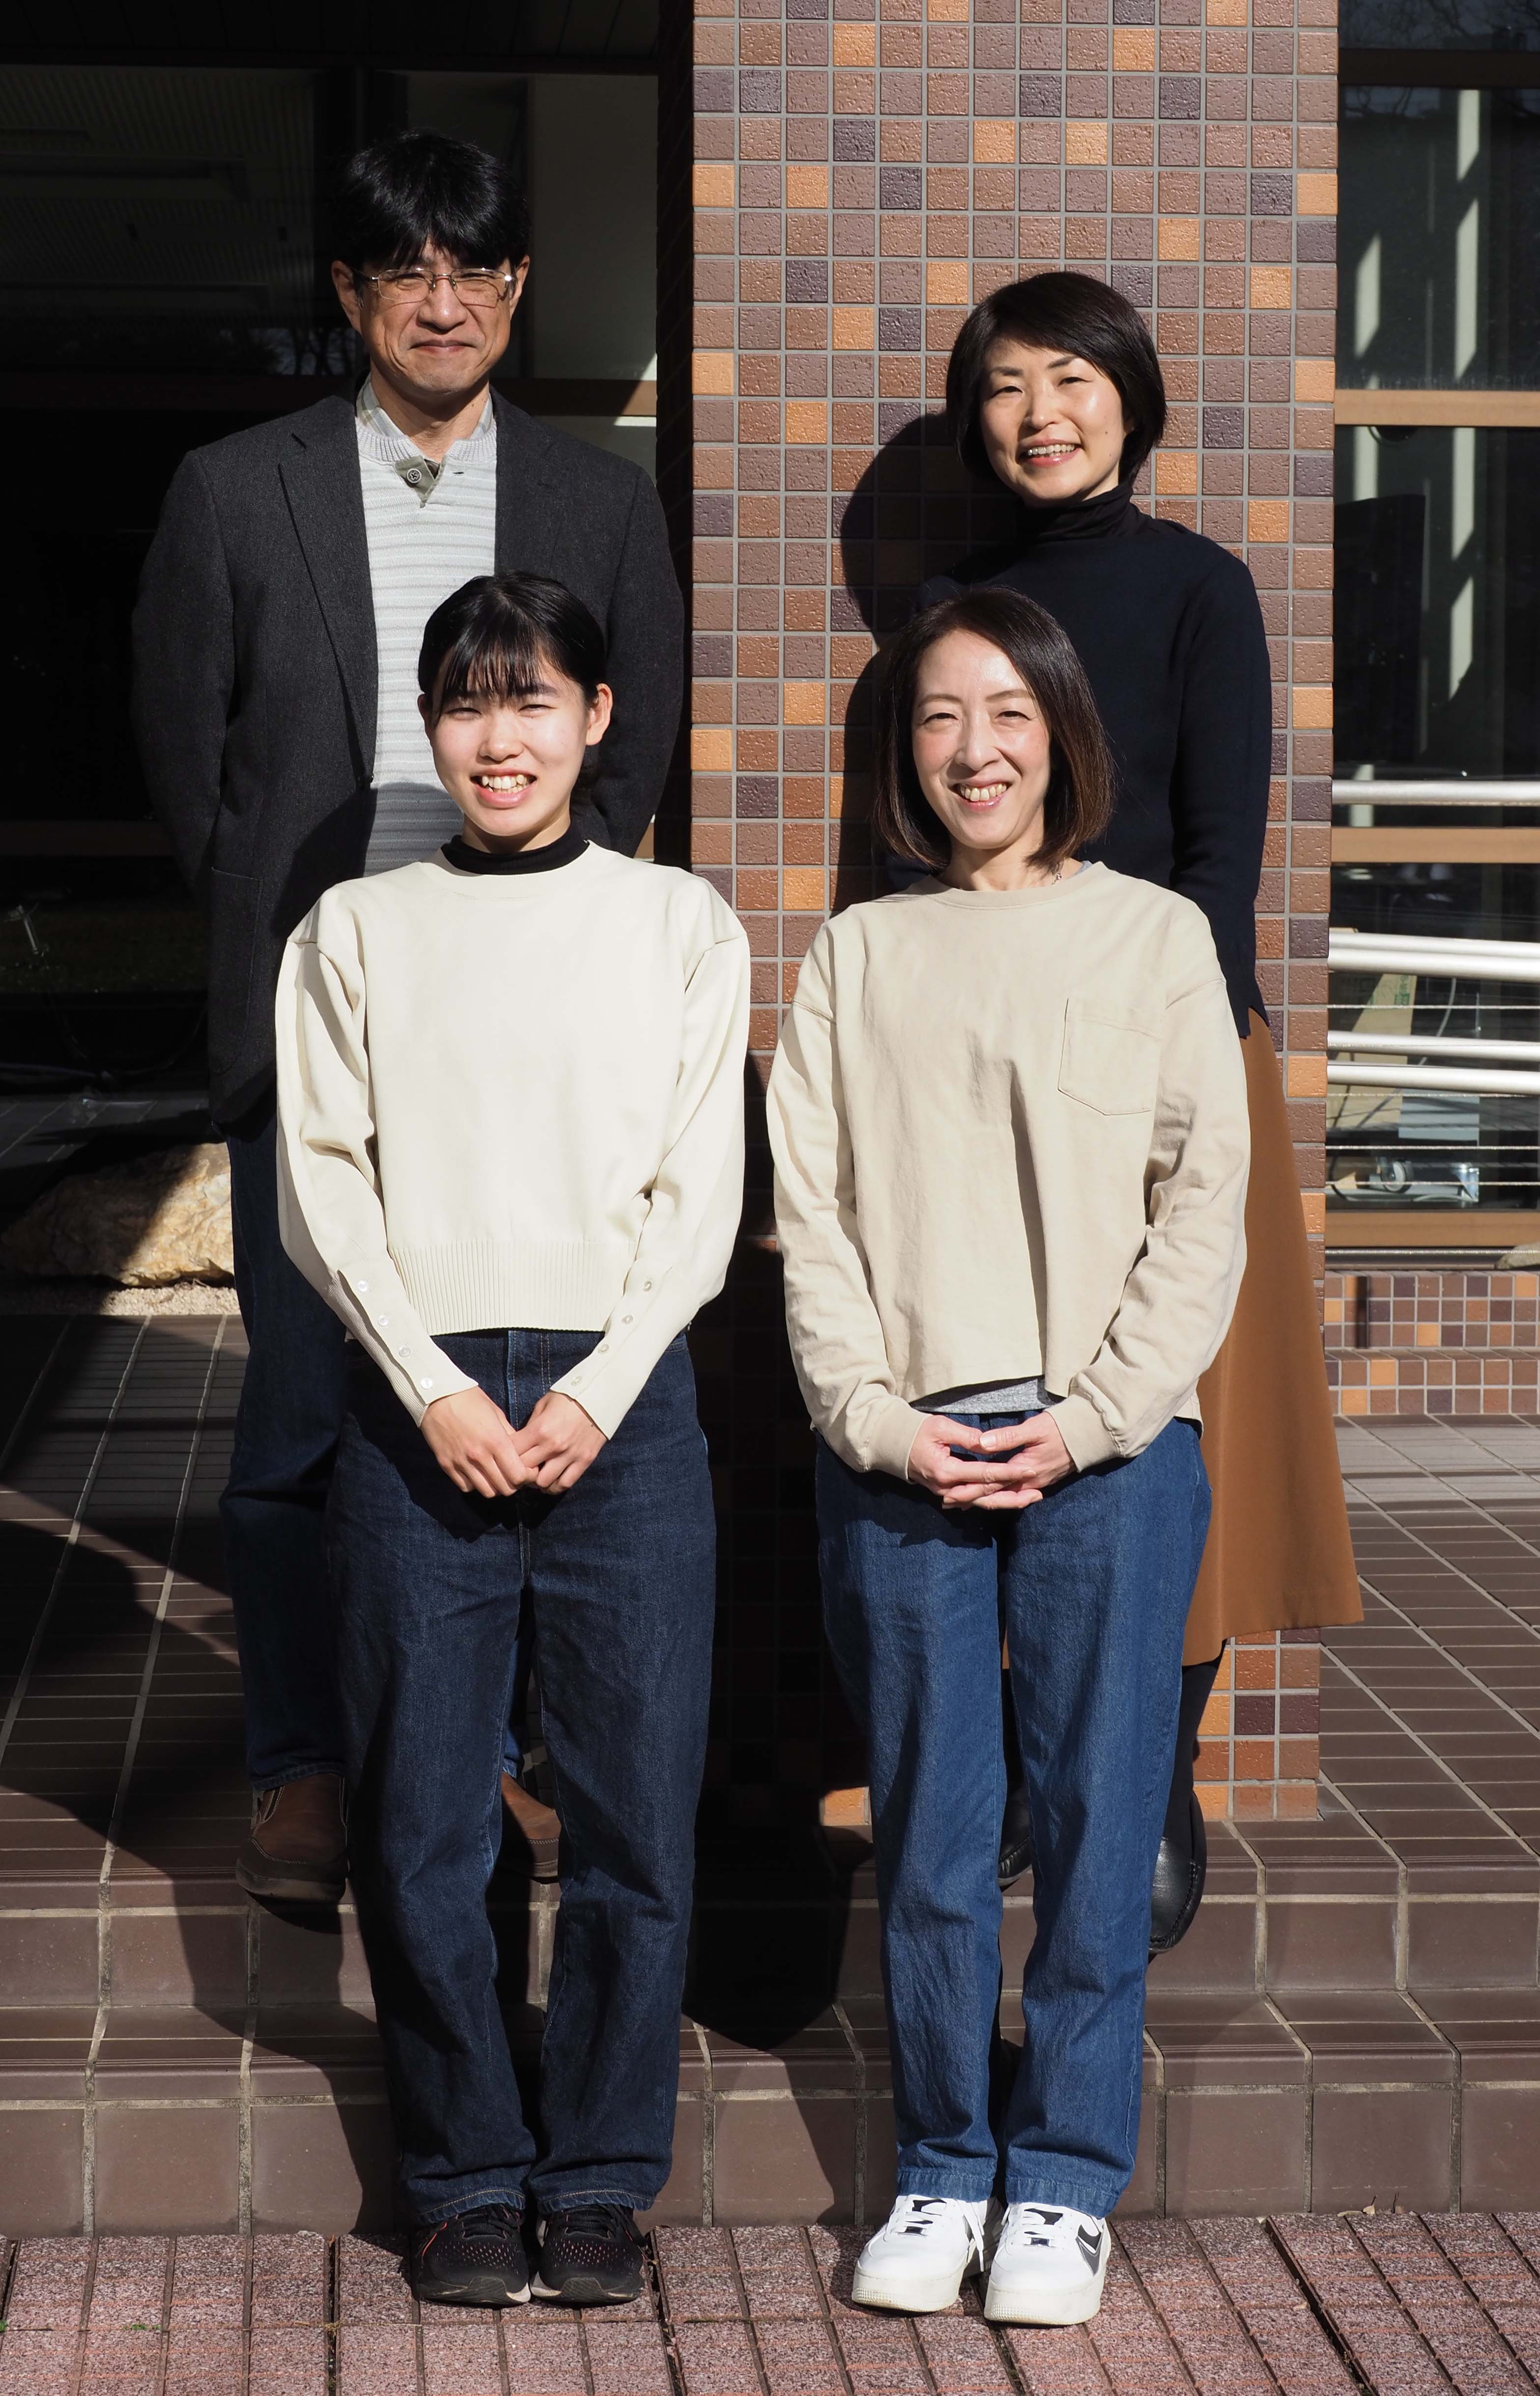 私（後列右）と、一緒に研究をしている谷本啓司先生（後列左）、研究室のみなさん。